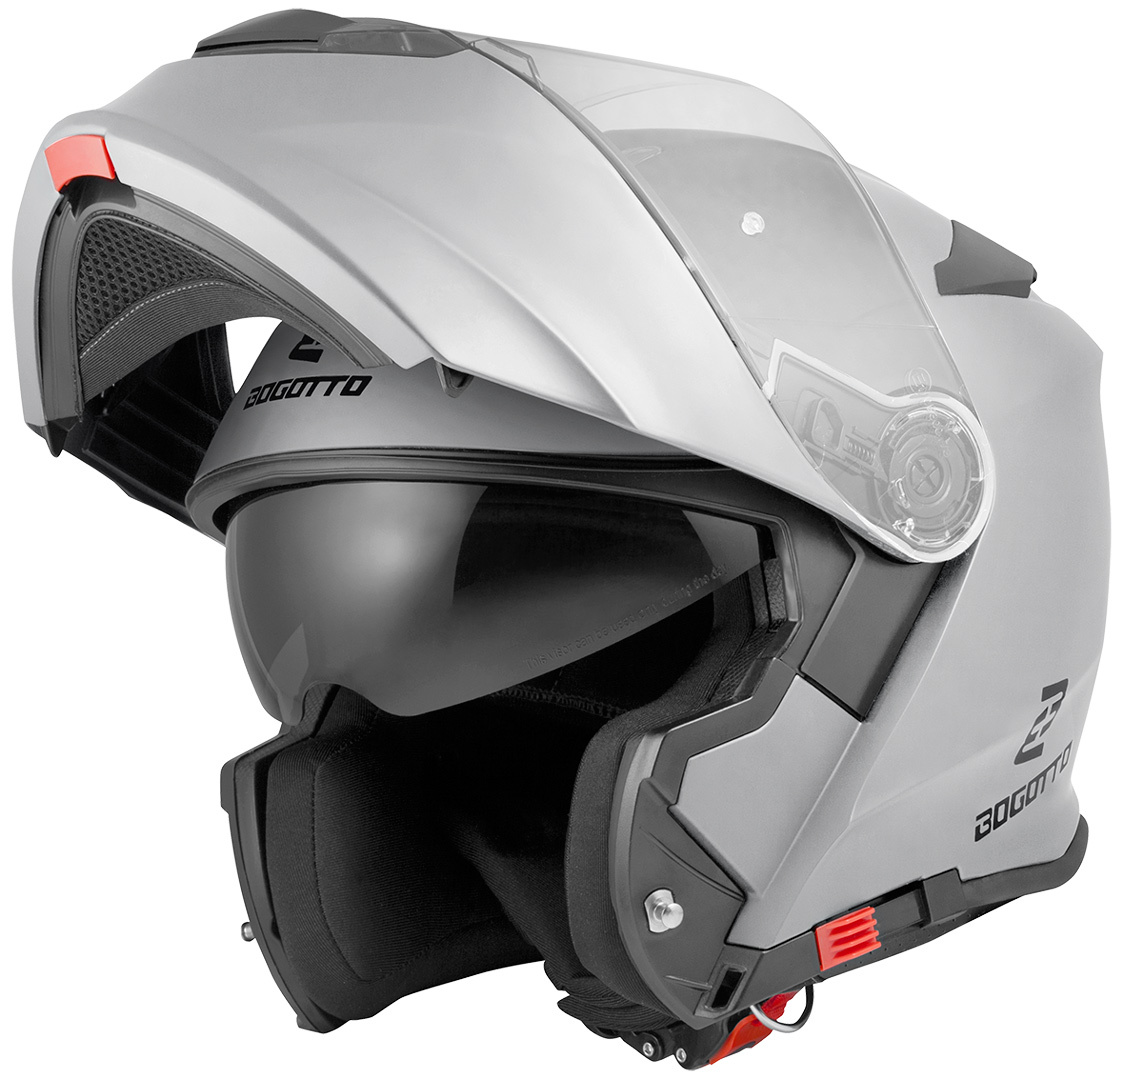 Мотоциклетный шлем Bogotto V271 с логотипом, серебристый мотоциклетный шлем в стиле ретро всесезонный шлем для мотоцикла сертификация dot